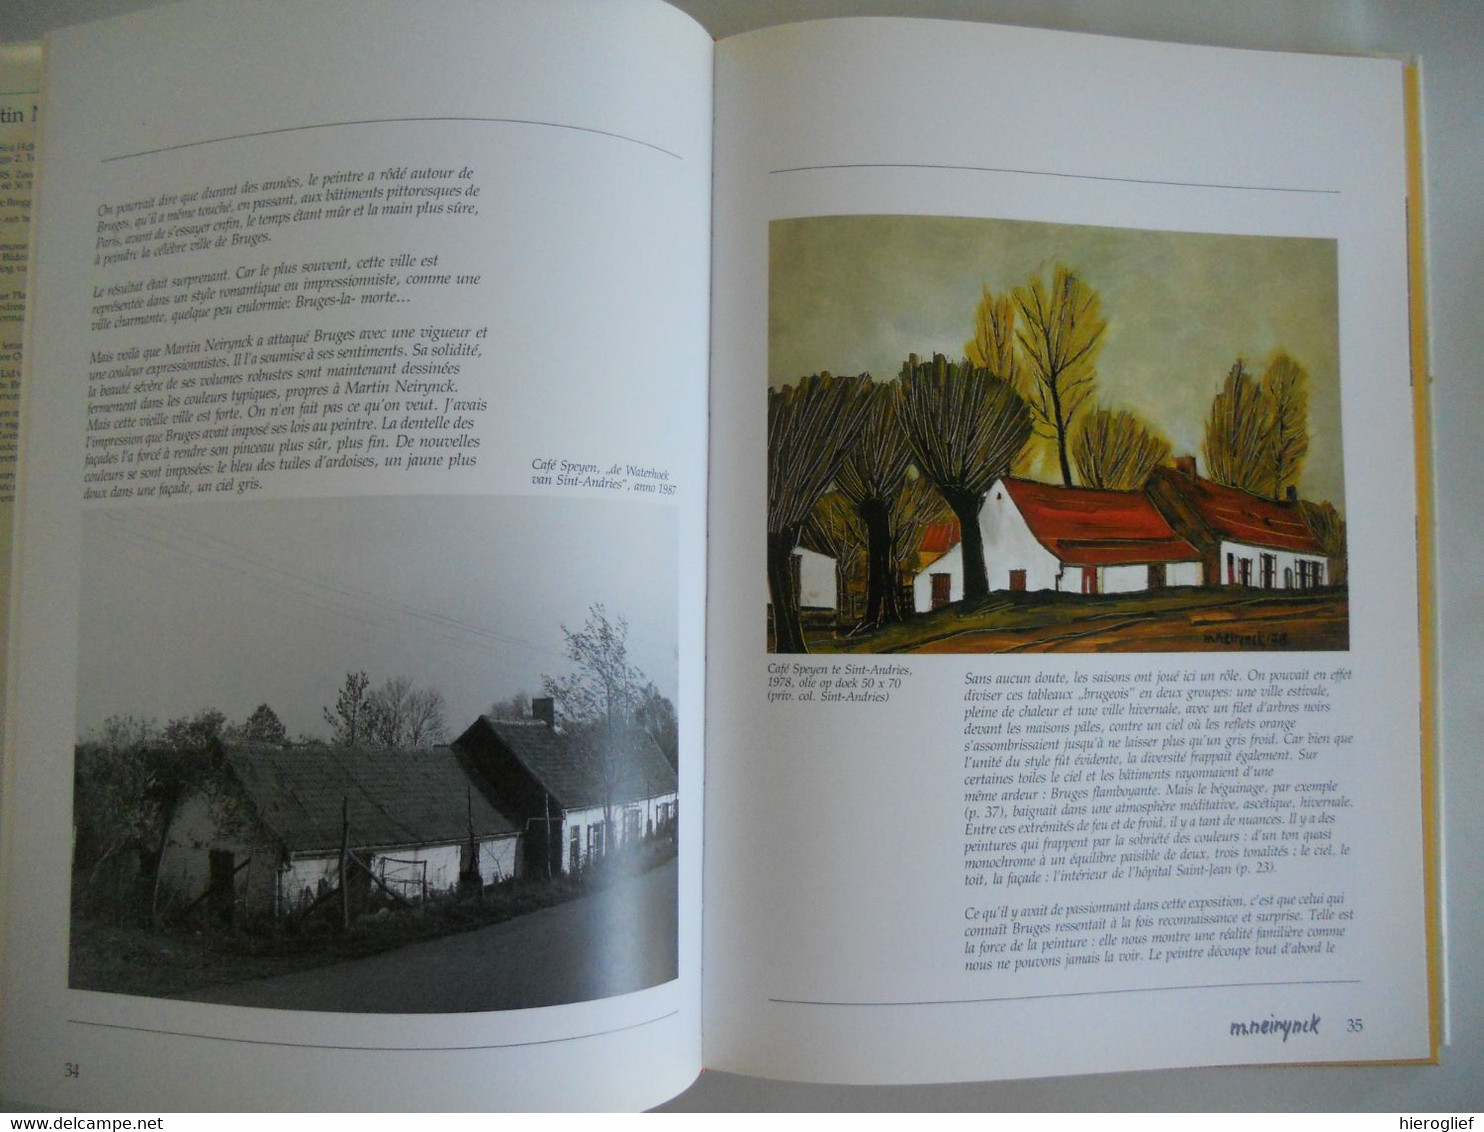 Martin NEIRYNCK  1936-1996 monografie door Demedts Leys Verstappen  Ancel Strasser Grötschel brugge Expressionisme